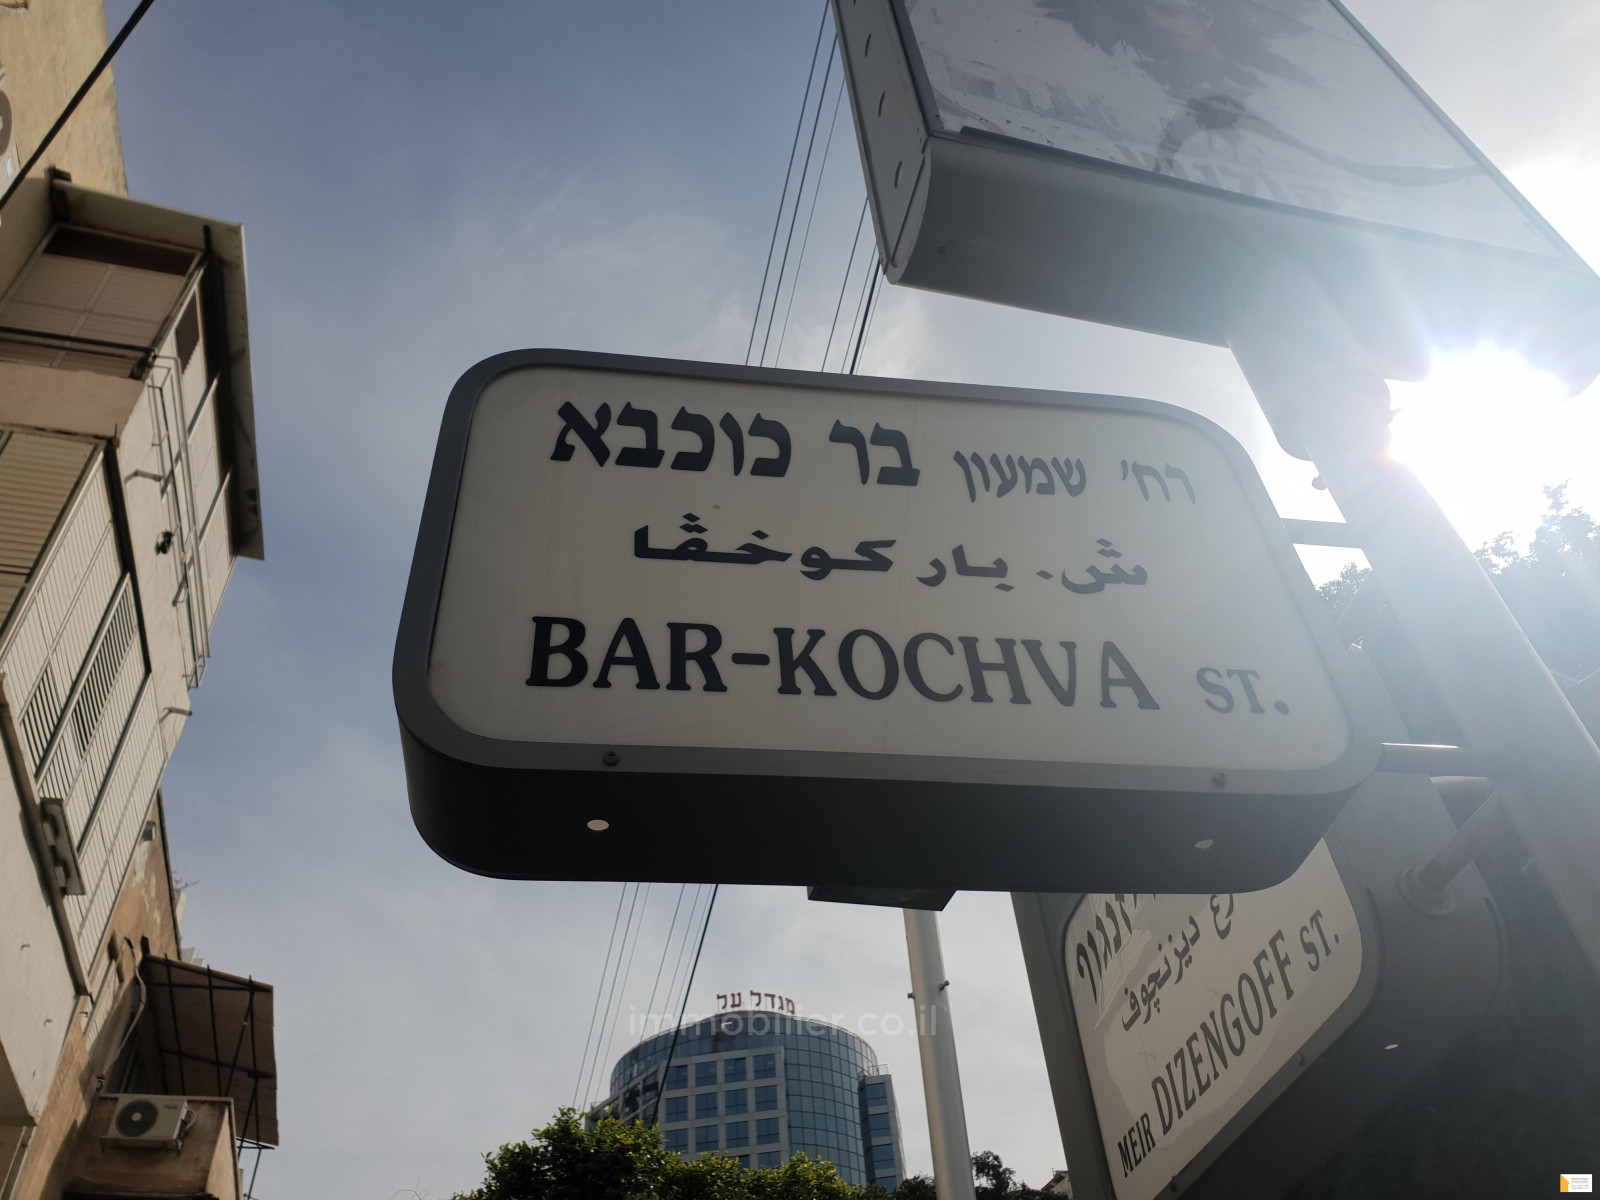 Квартира 4 комнат(-ы)  Tel Aviv рядом с морем 232-IBL-3709